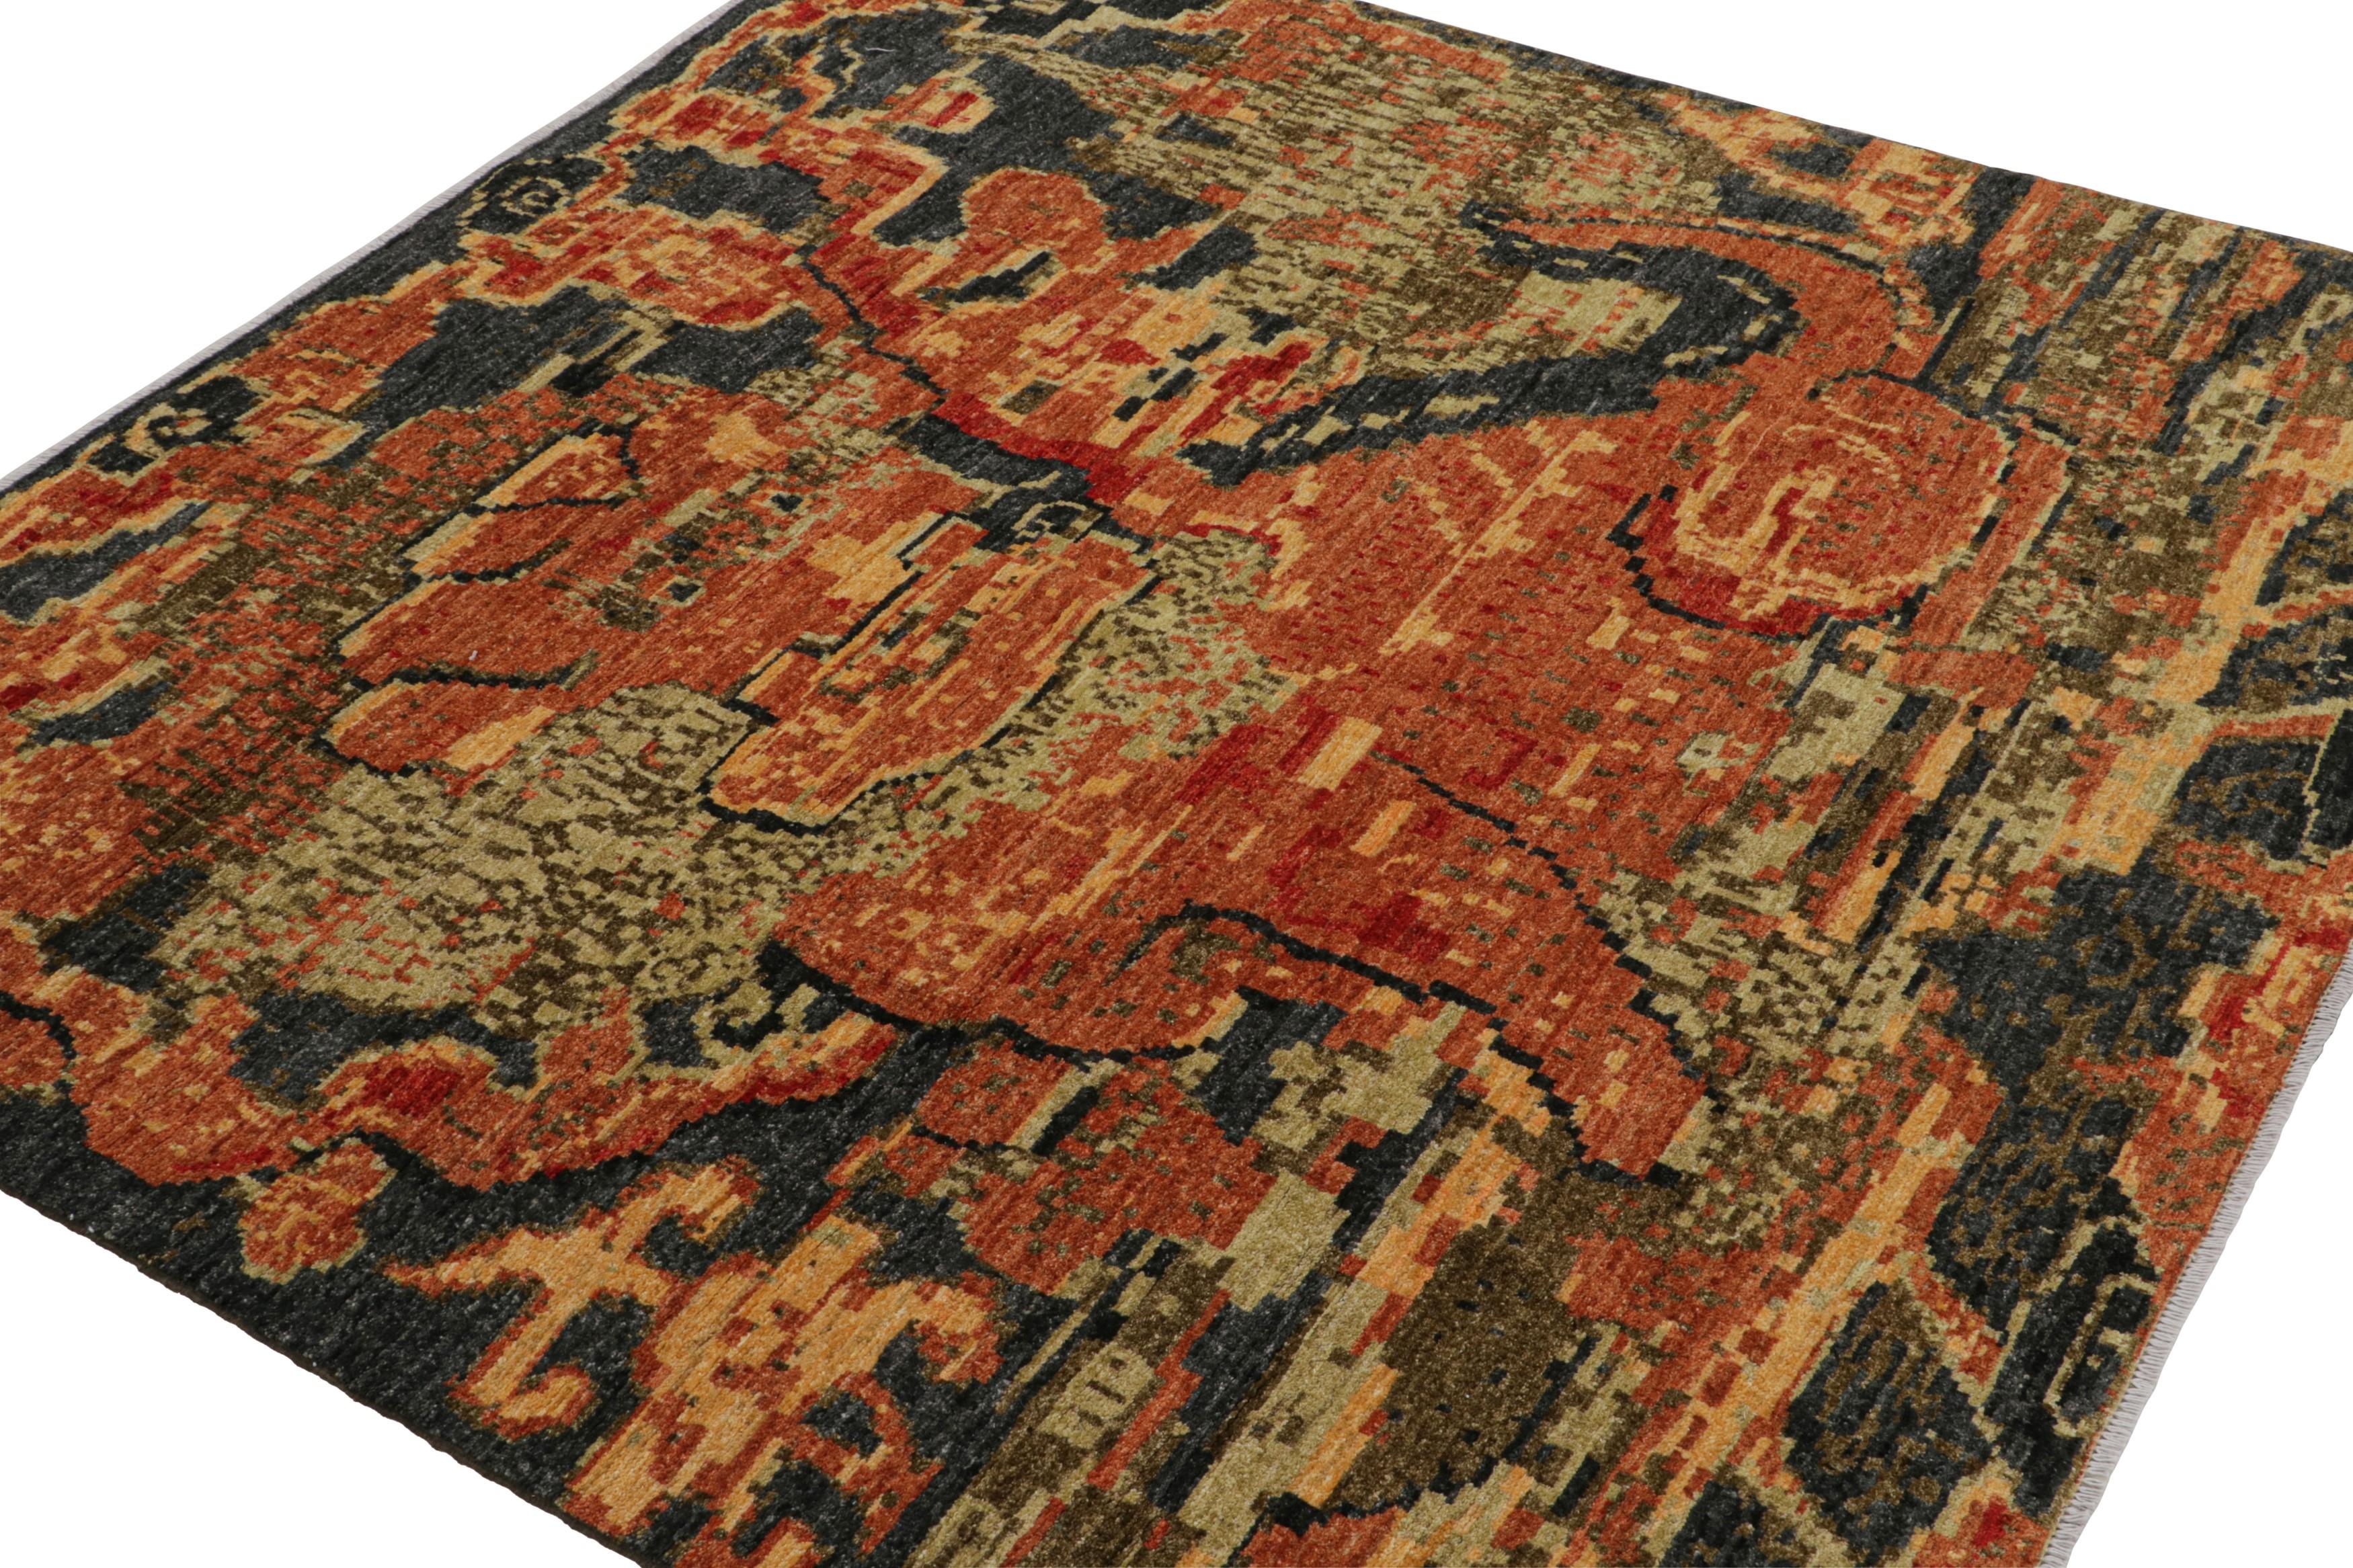 Dieser 6x9 große europäische Flachgewebe-Teppich aus Wolle wurde von englischen Tudor-Teppichen und Wandteppichen aus dem 18. Jahrhundert inspiriert. Das Design besteht aus floralen Mustern in Grün, Rot, Gold und blaugrünen Akzenten auf dem gesamten